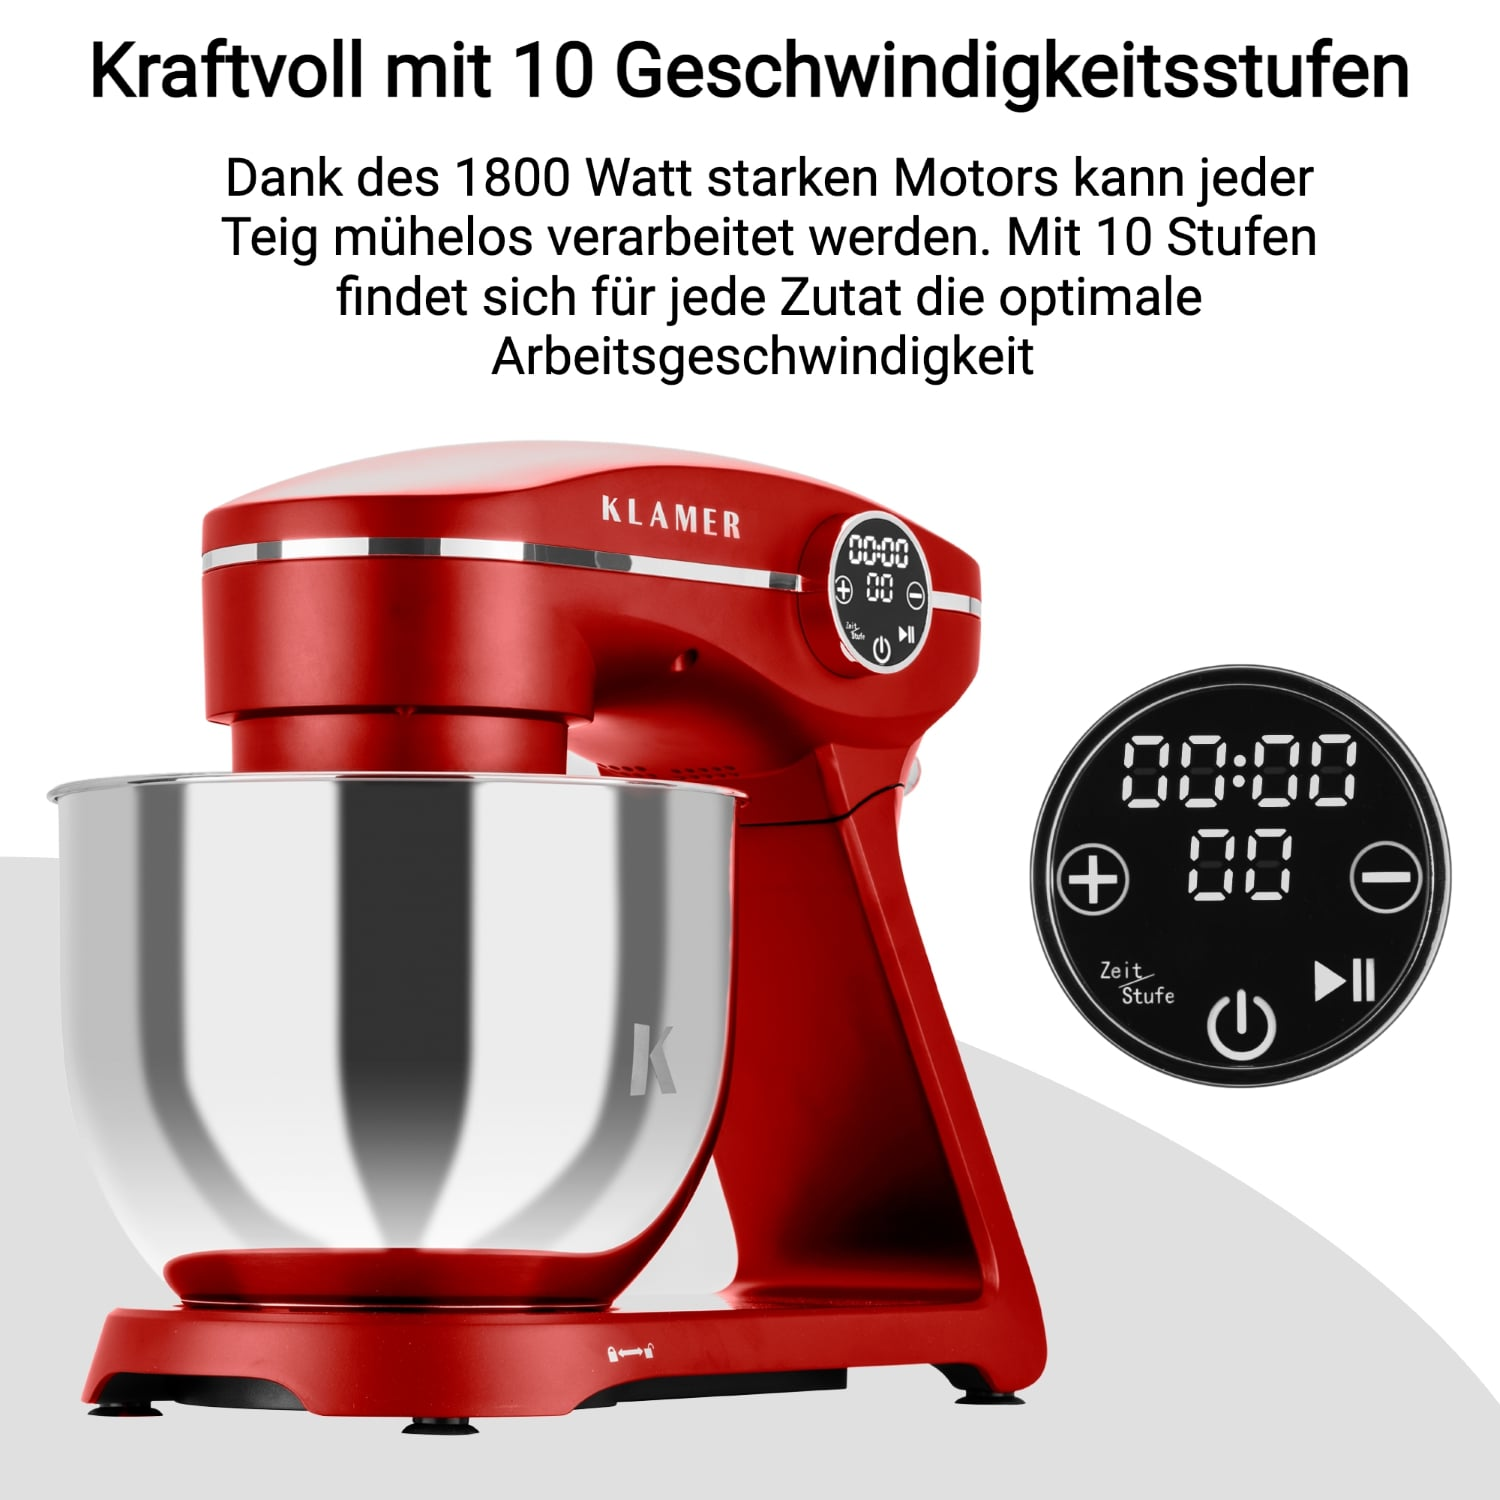 KLAMER Küchenmaschine - Rot Rot (1800 Küchenmaschine Watt)